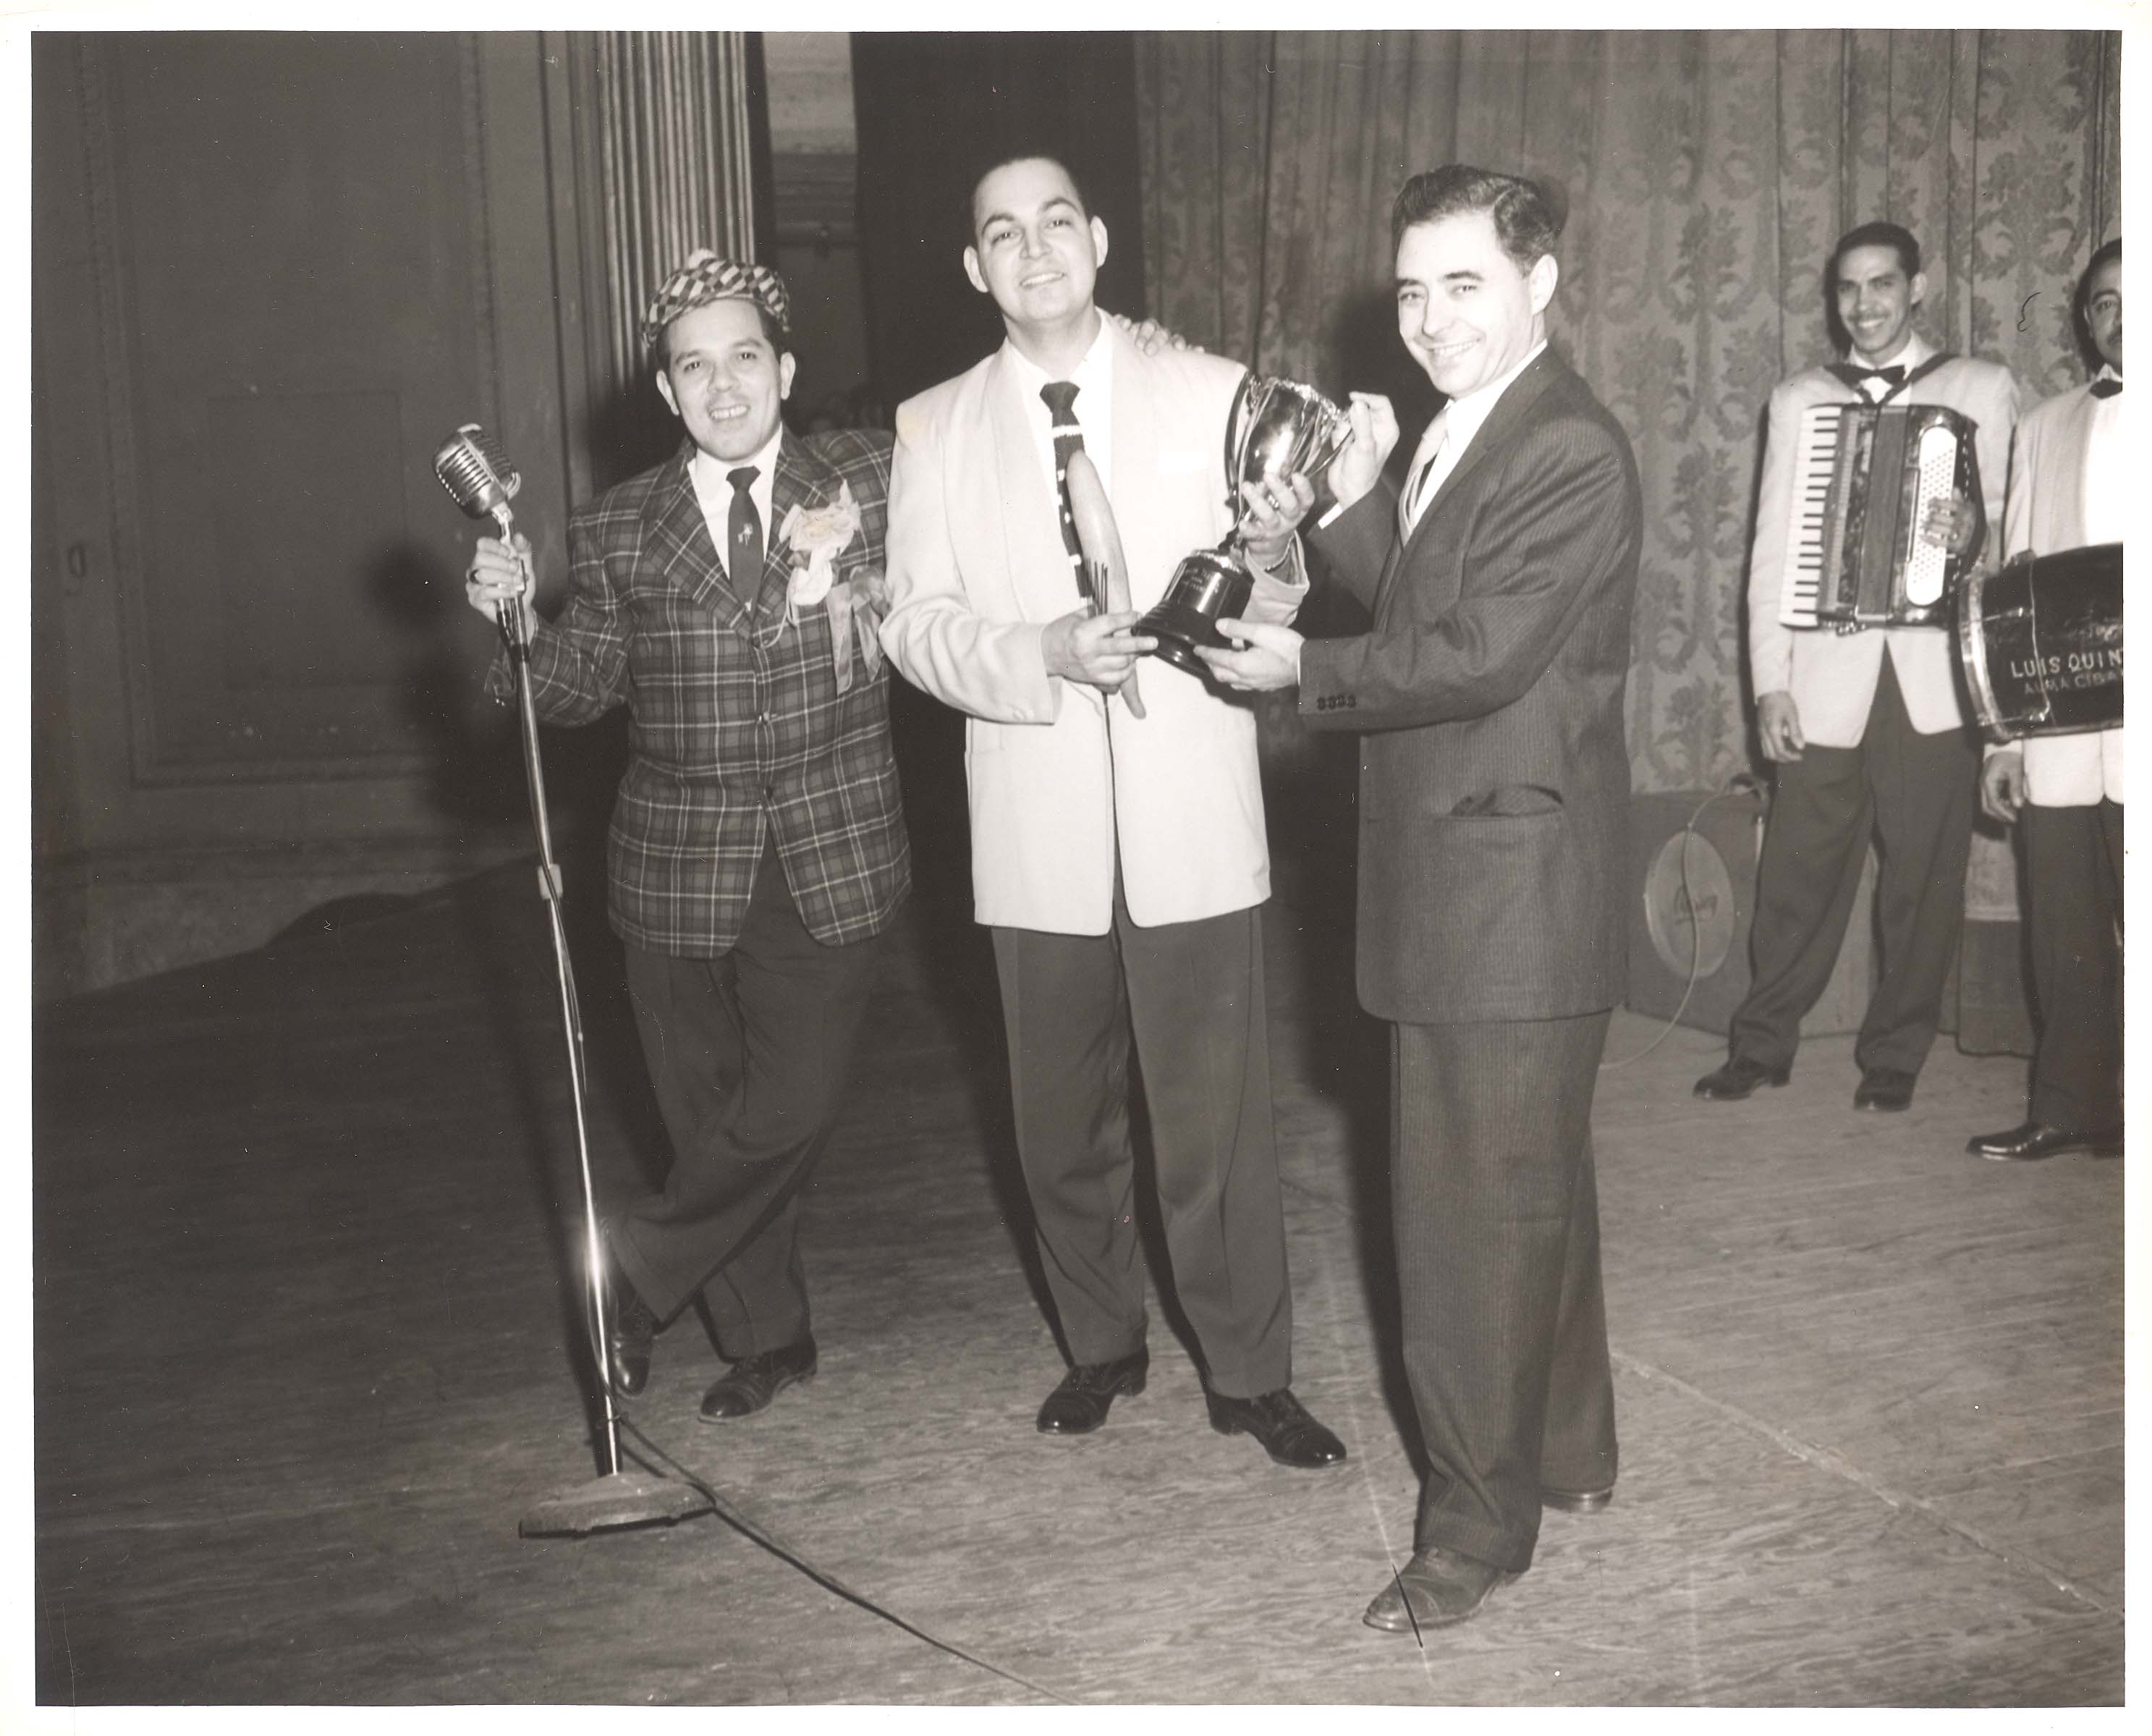 Dioris Valladares (center) receiving an award, ca. 1950s